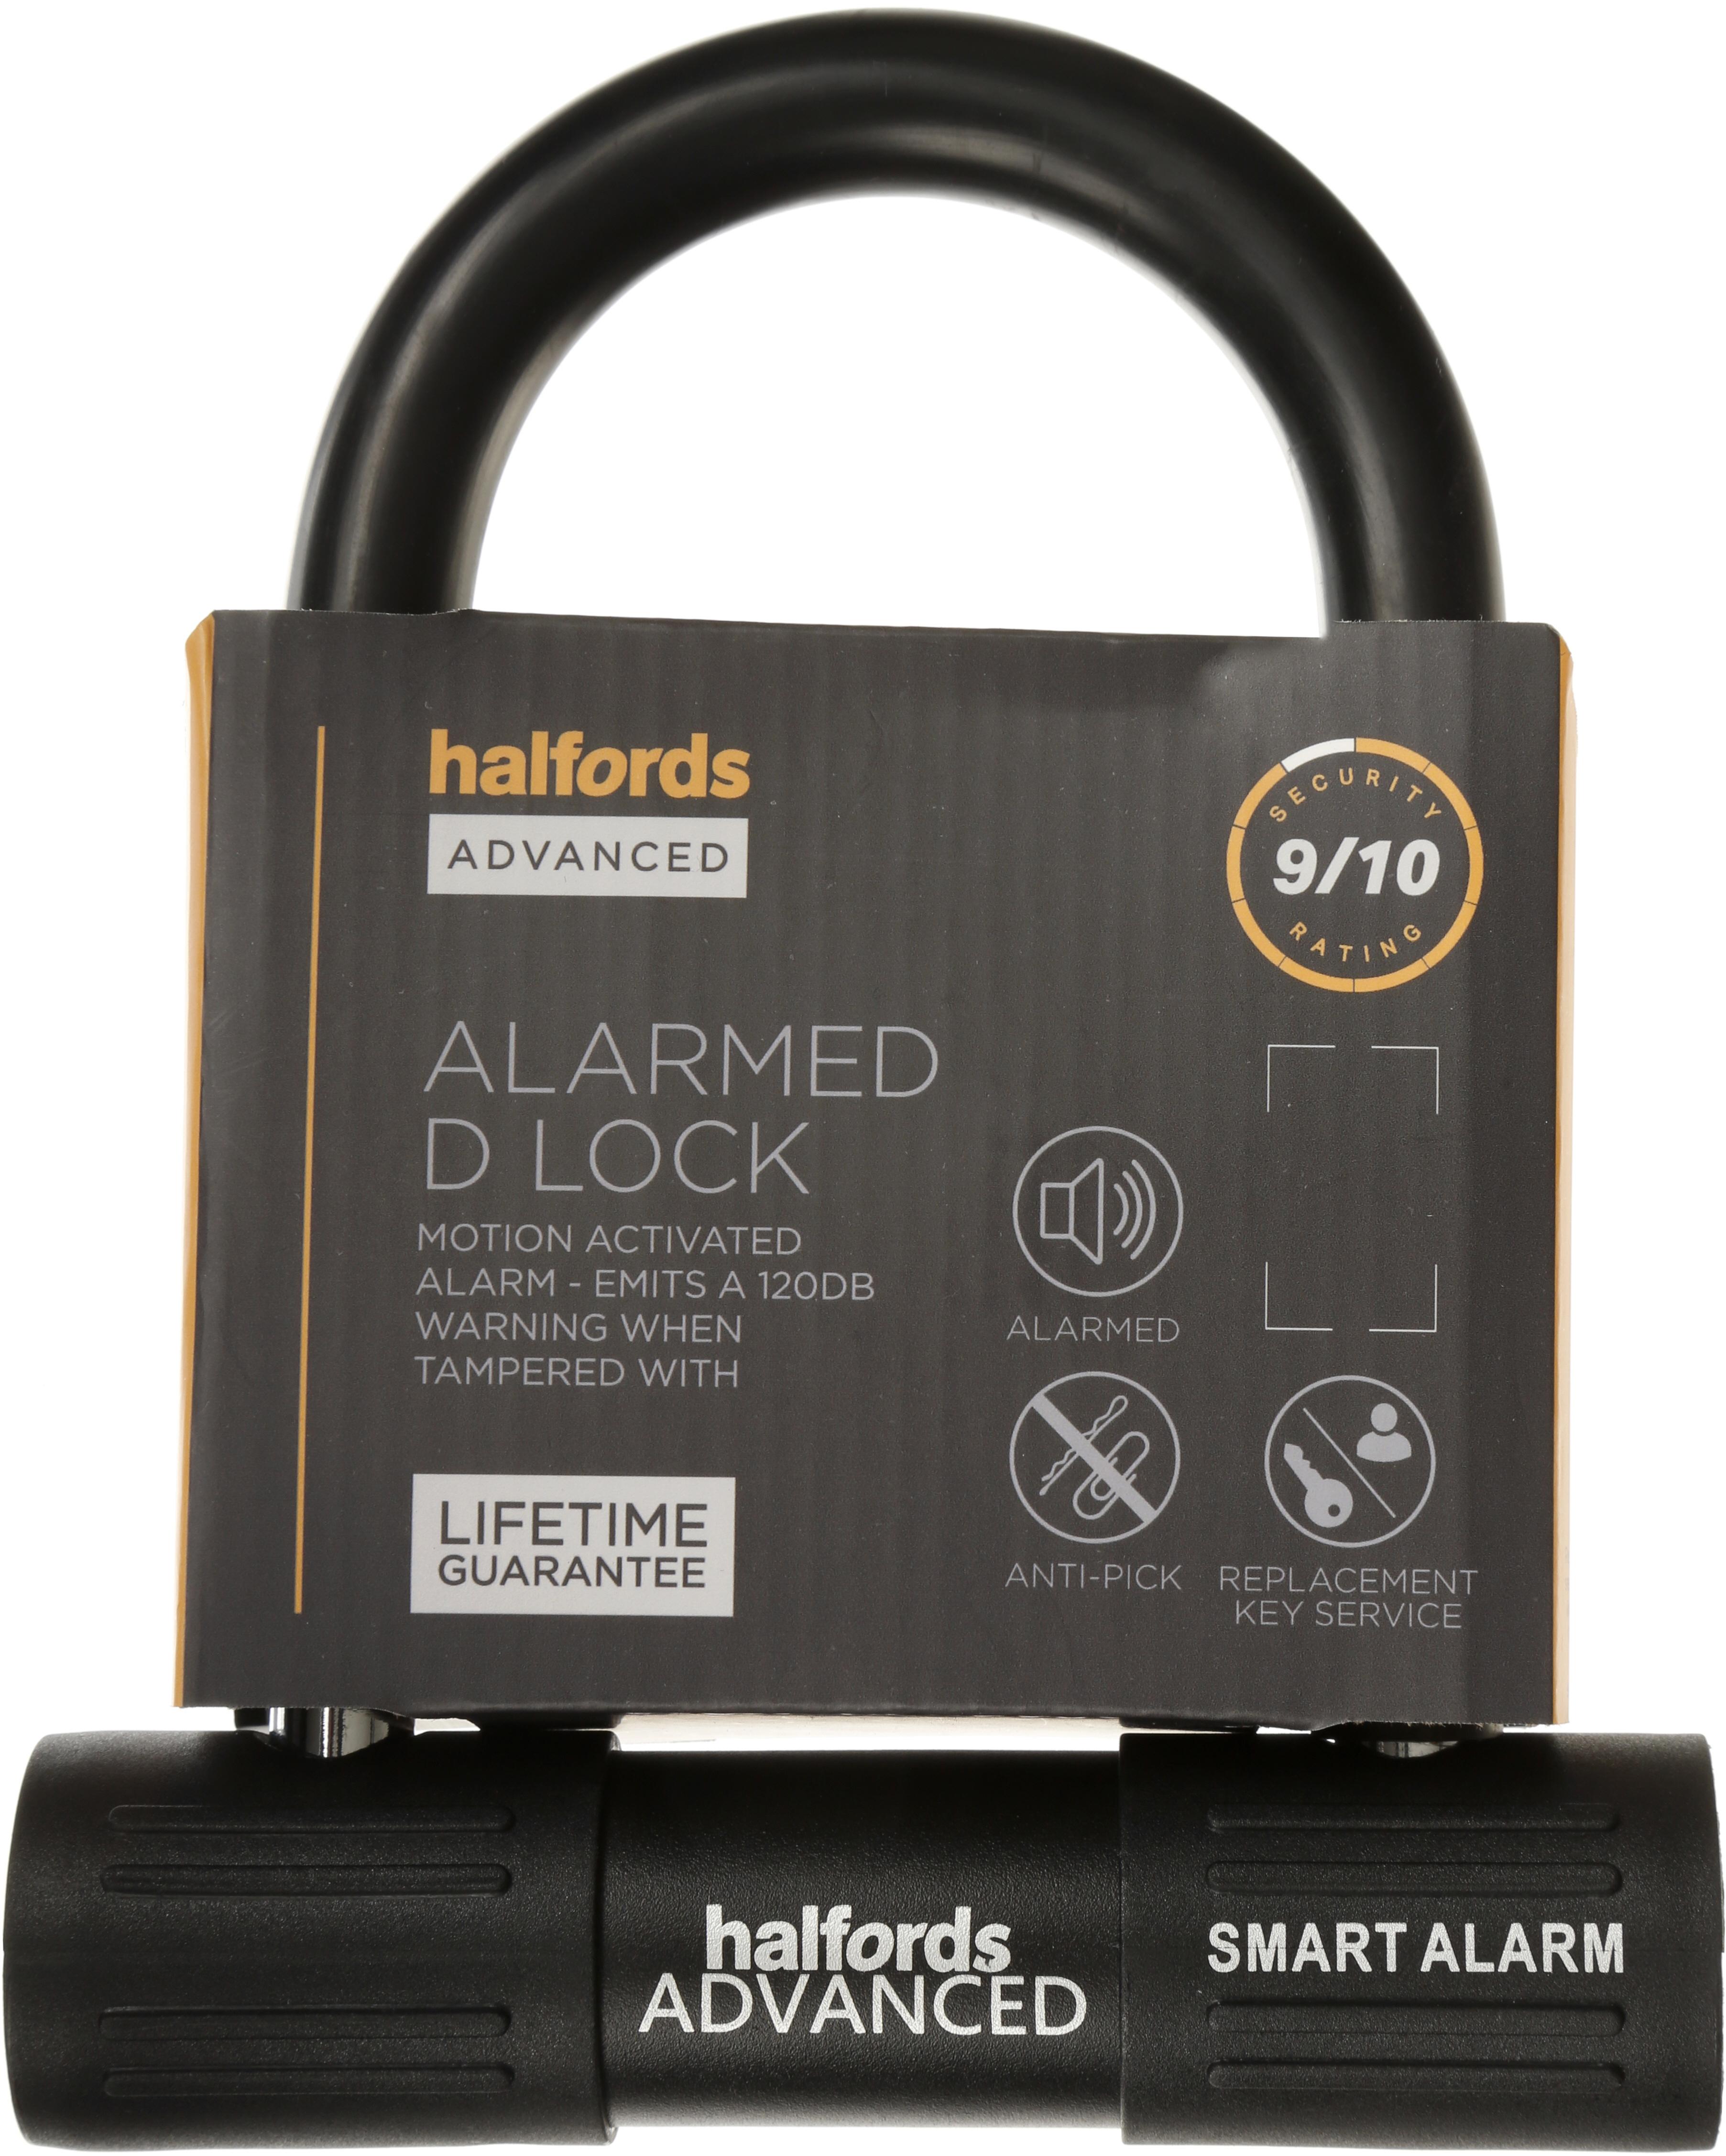 halfords cycle locks